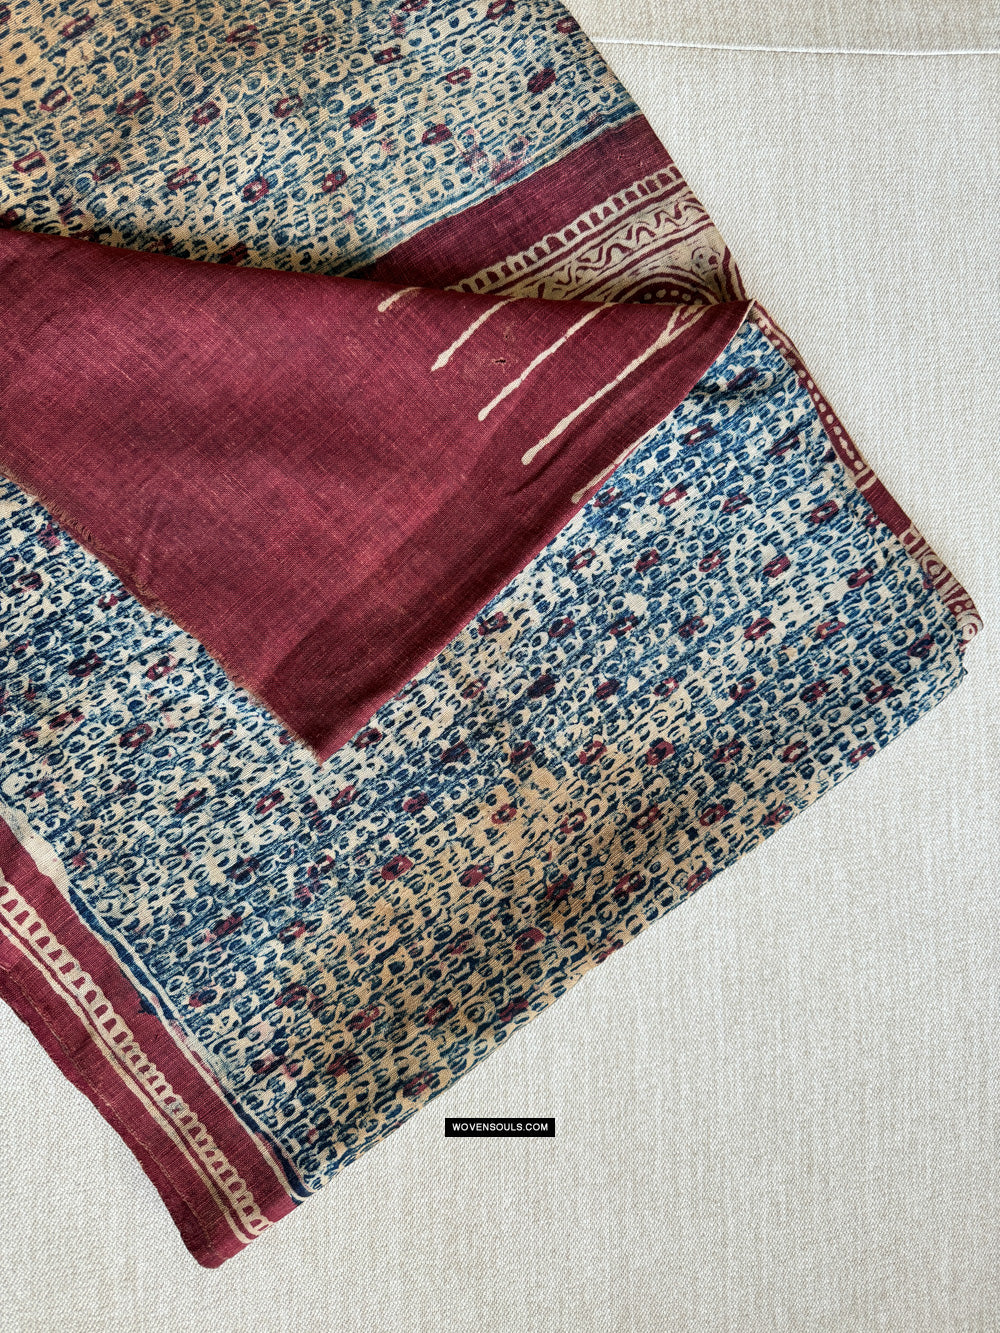 1922 Antique Indian Trade Textile Toraja - Indigo